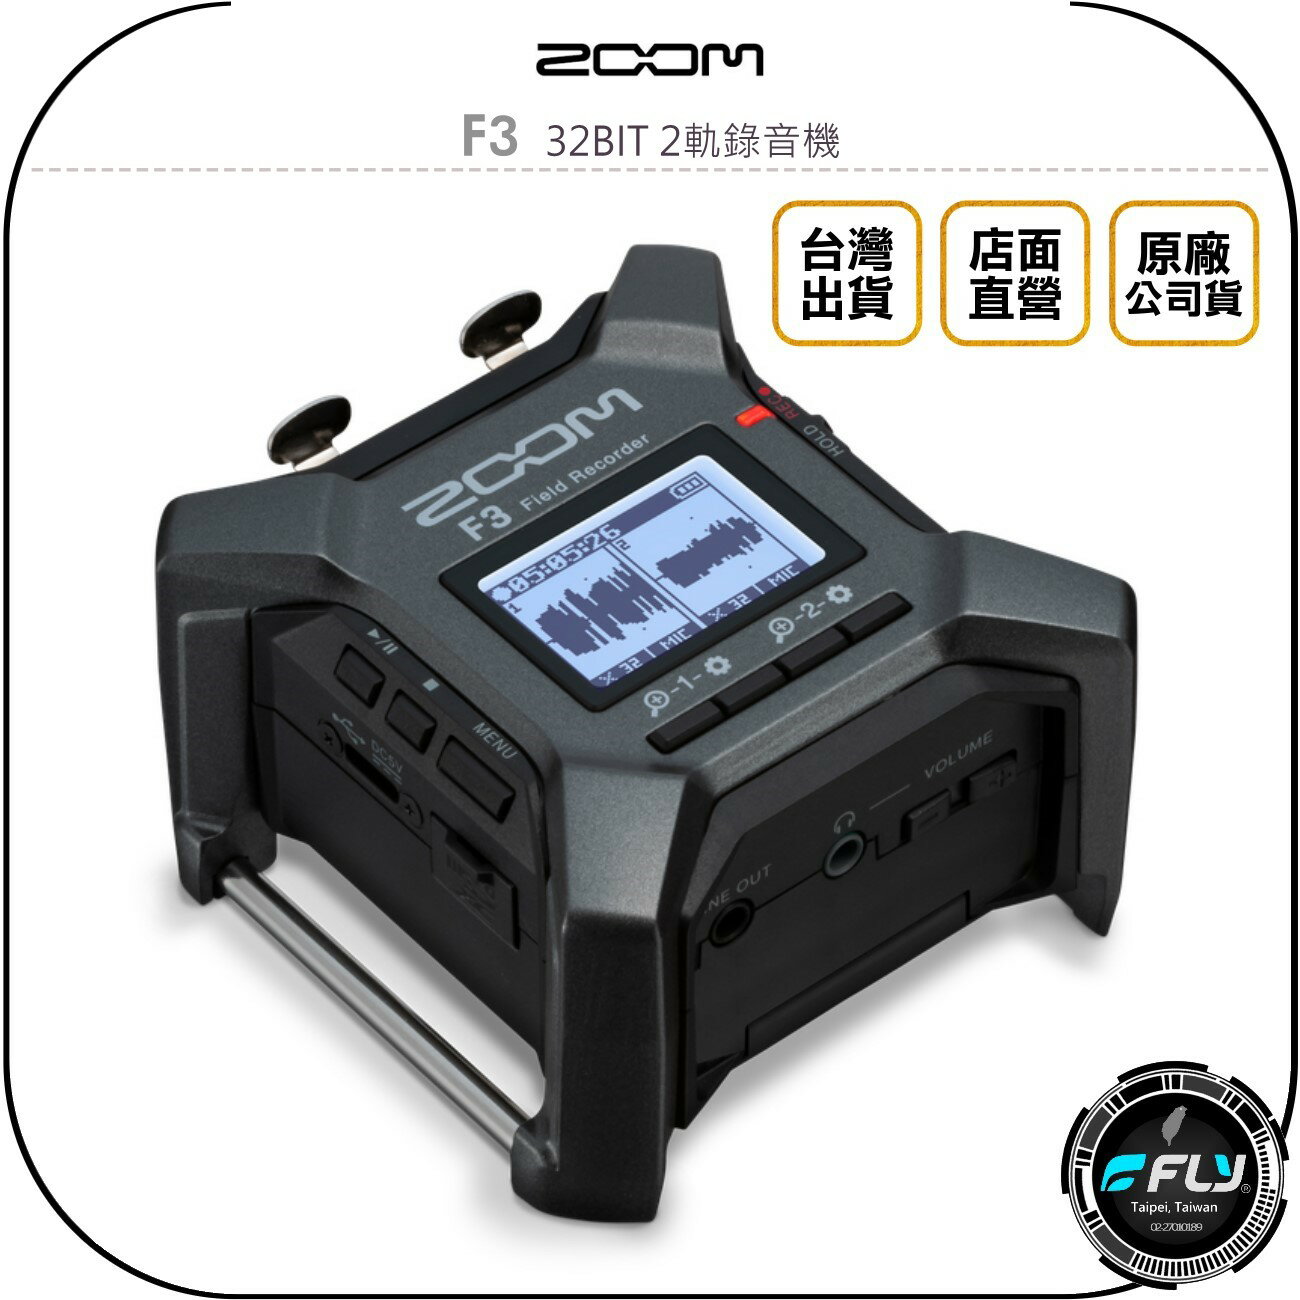 《飛翔無線3C》ZOOM F3 32BIT 2軌錄音機◉公司貨◉現場錄音◉XLR連接◉音量控制◉USB音頻接口